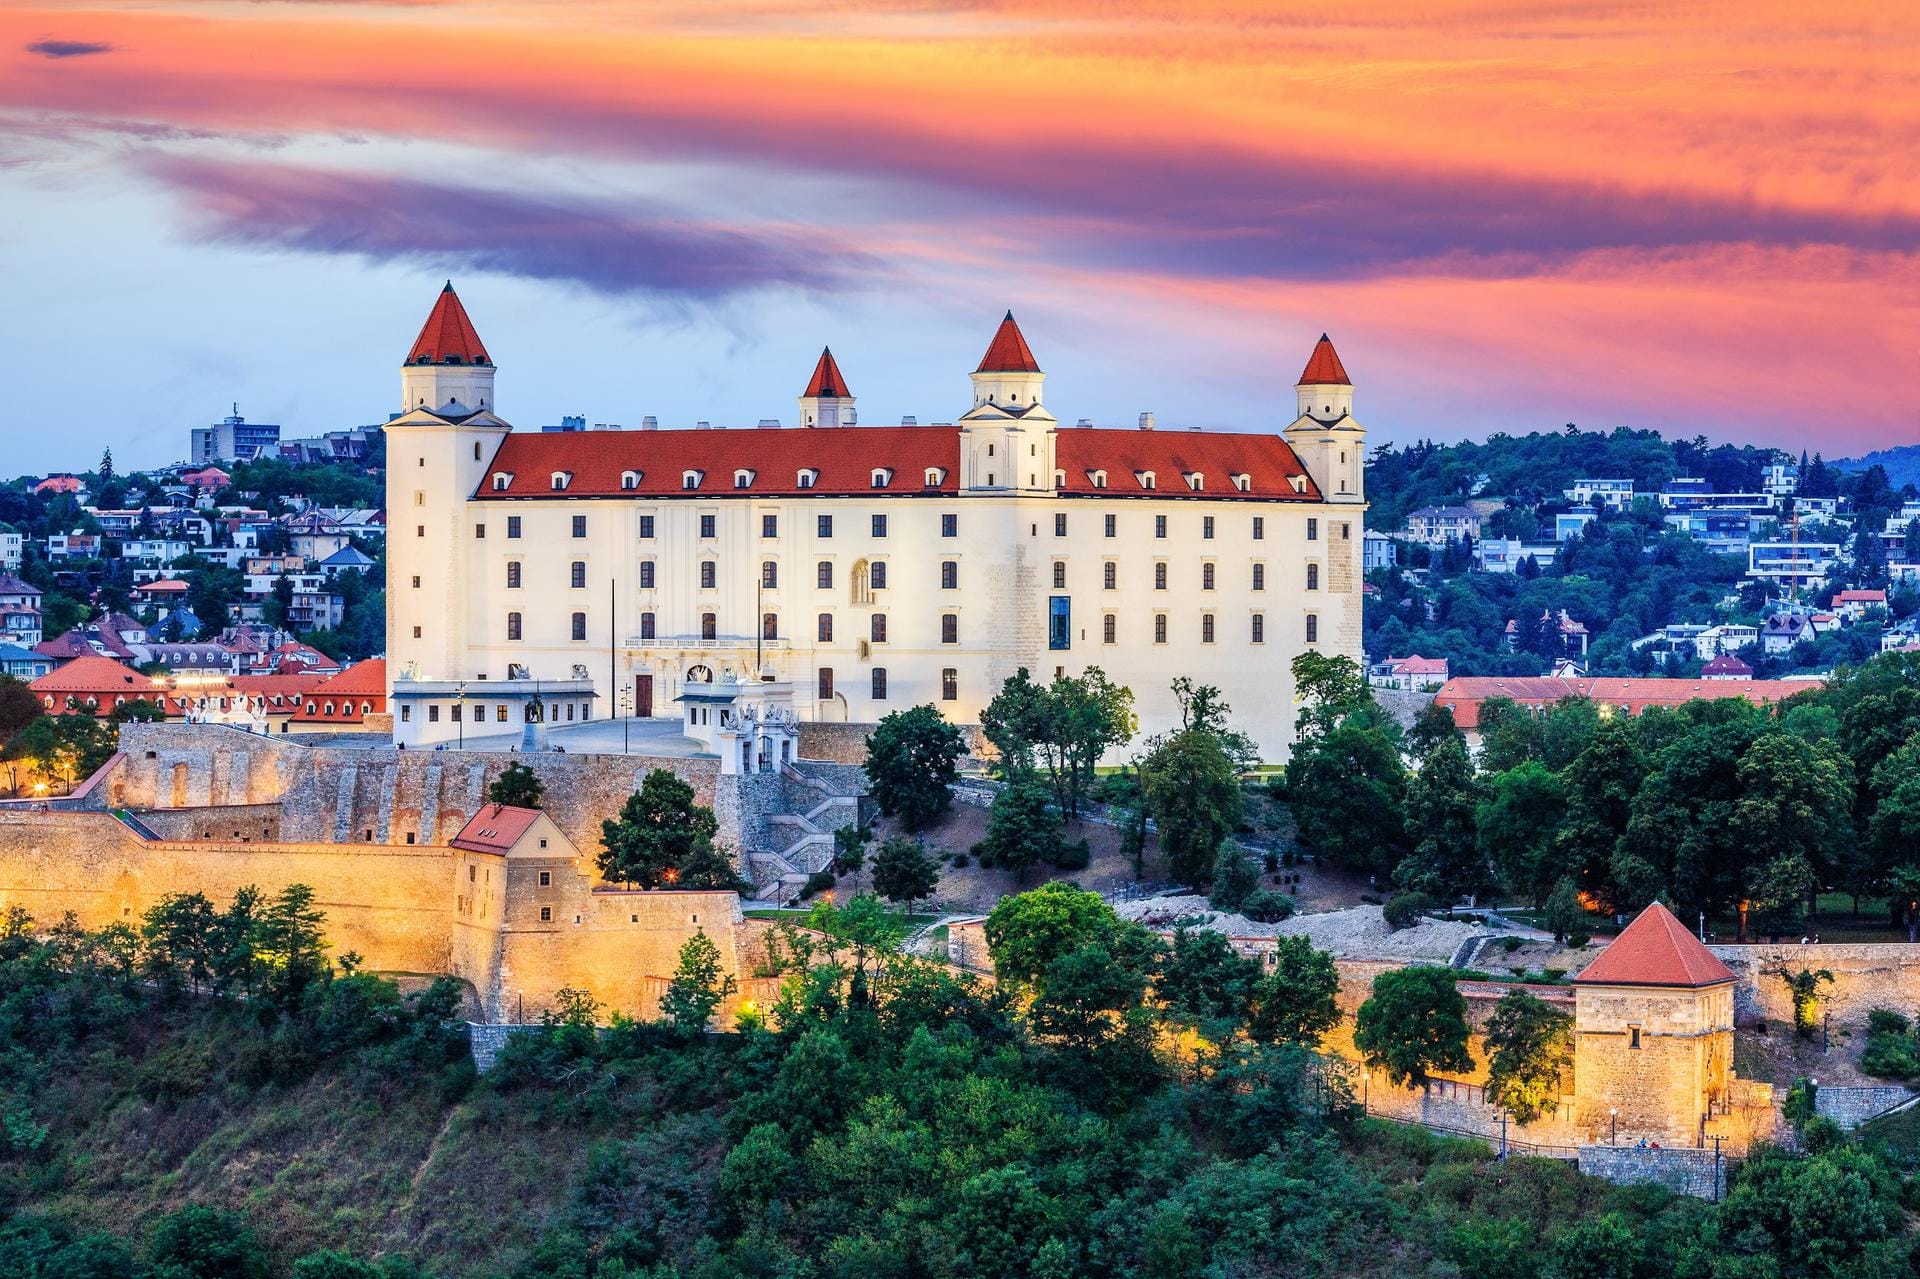 Burg Bratislava: Auf Platz neun liegt die slowakische Hauptstadt Bratislava. Besucher können für wenig Geld Sehenswürdigkeiten wie die Burg Bratislava besuchen.